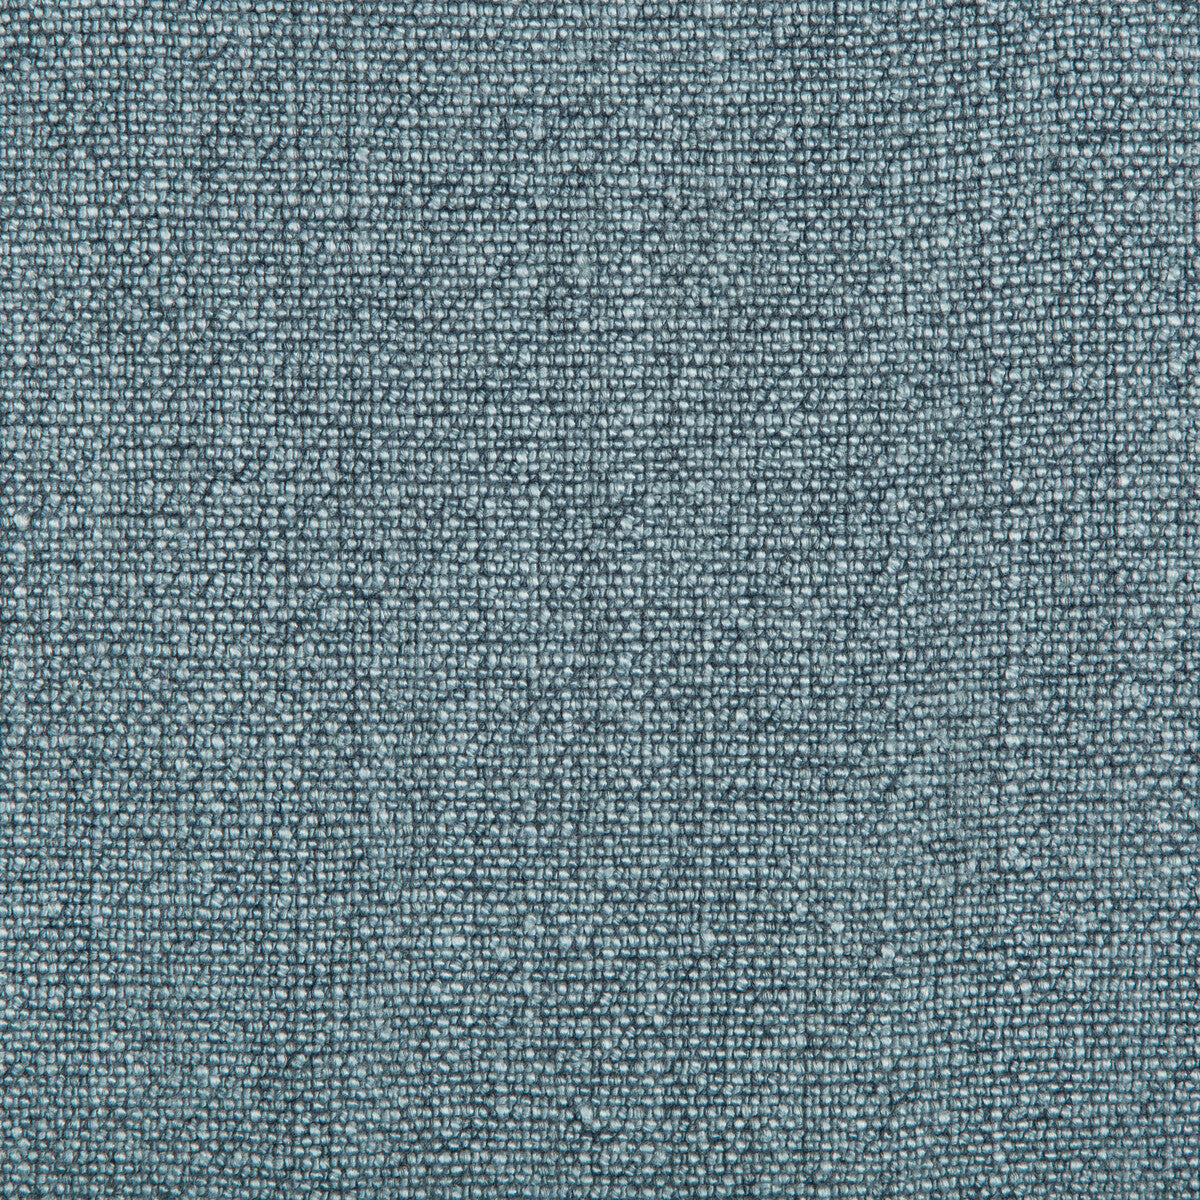 Kravet Basics fabric in 35189-505 color - pattern 35189.505.0 - by Kravet Basics